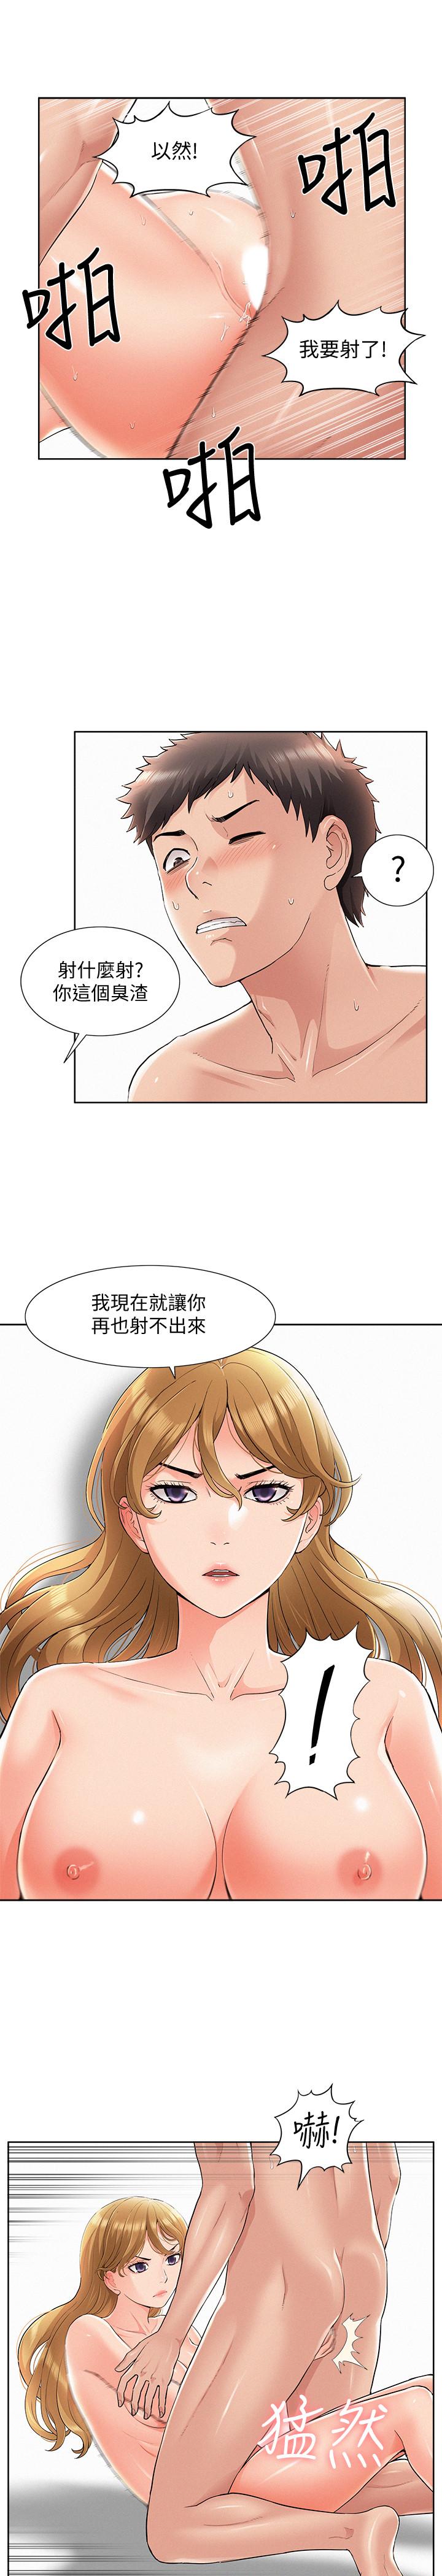 韩国污漫画 難言之隱 第49话-治疗时间 5